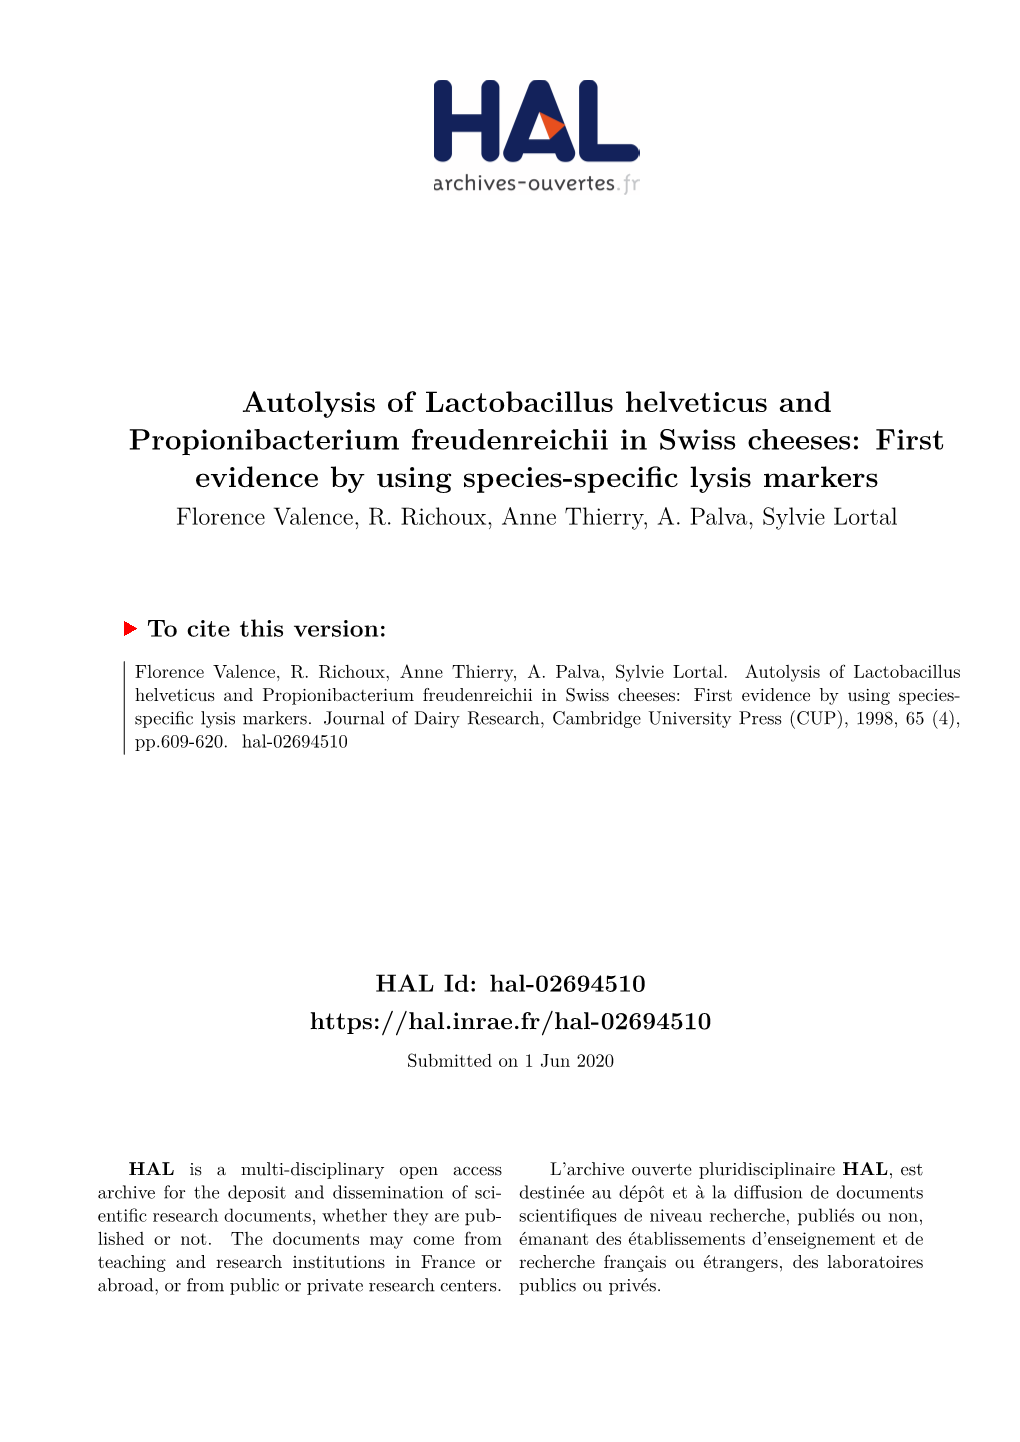 Autolysis of Lactobacillus Helveticus and Propionibacterium